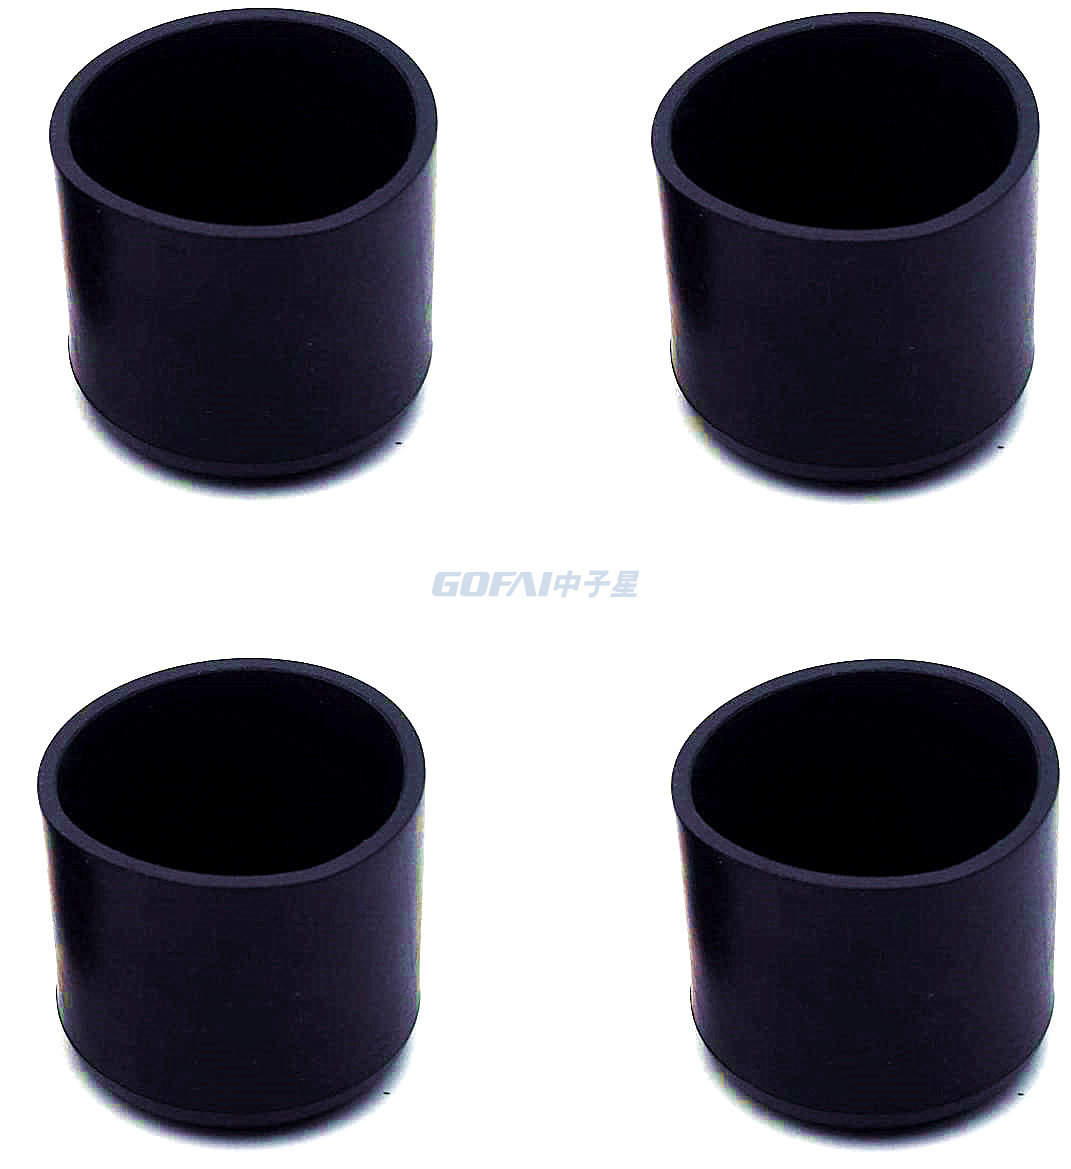 Pies de soporte Base en ángulo para tubo cuadrado y rectangular